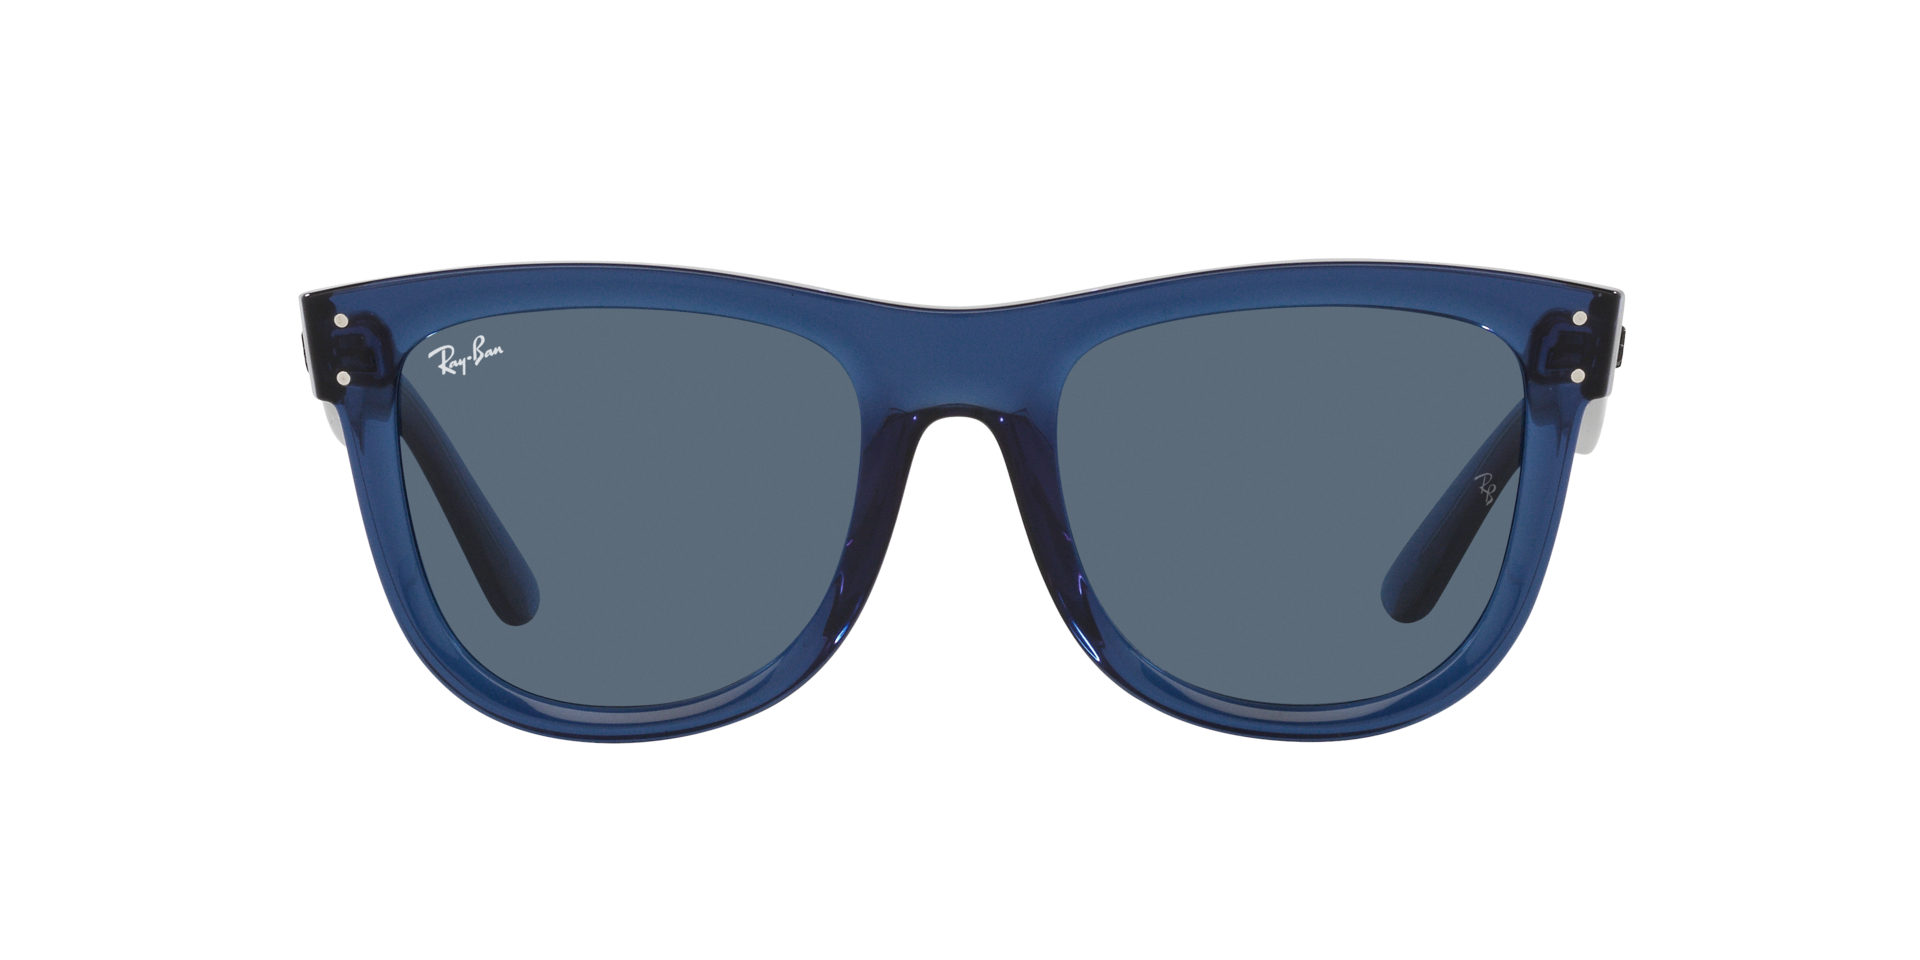 Das Bild zeigt die Sonnenbrille RBR0502S 67083A von der  Marke Ray Ban in dunkelblau transparent